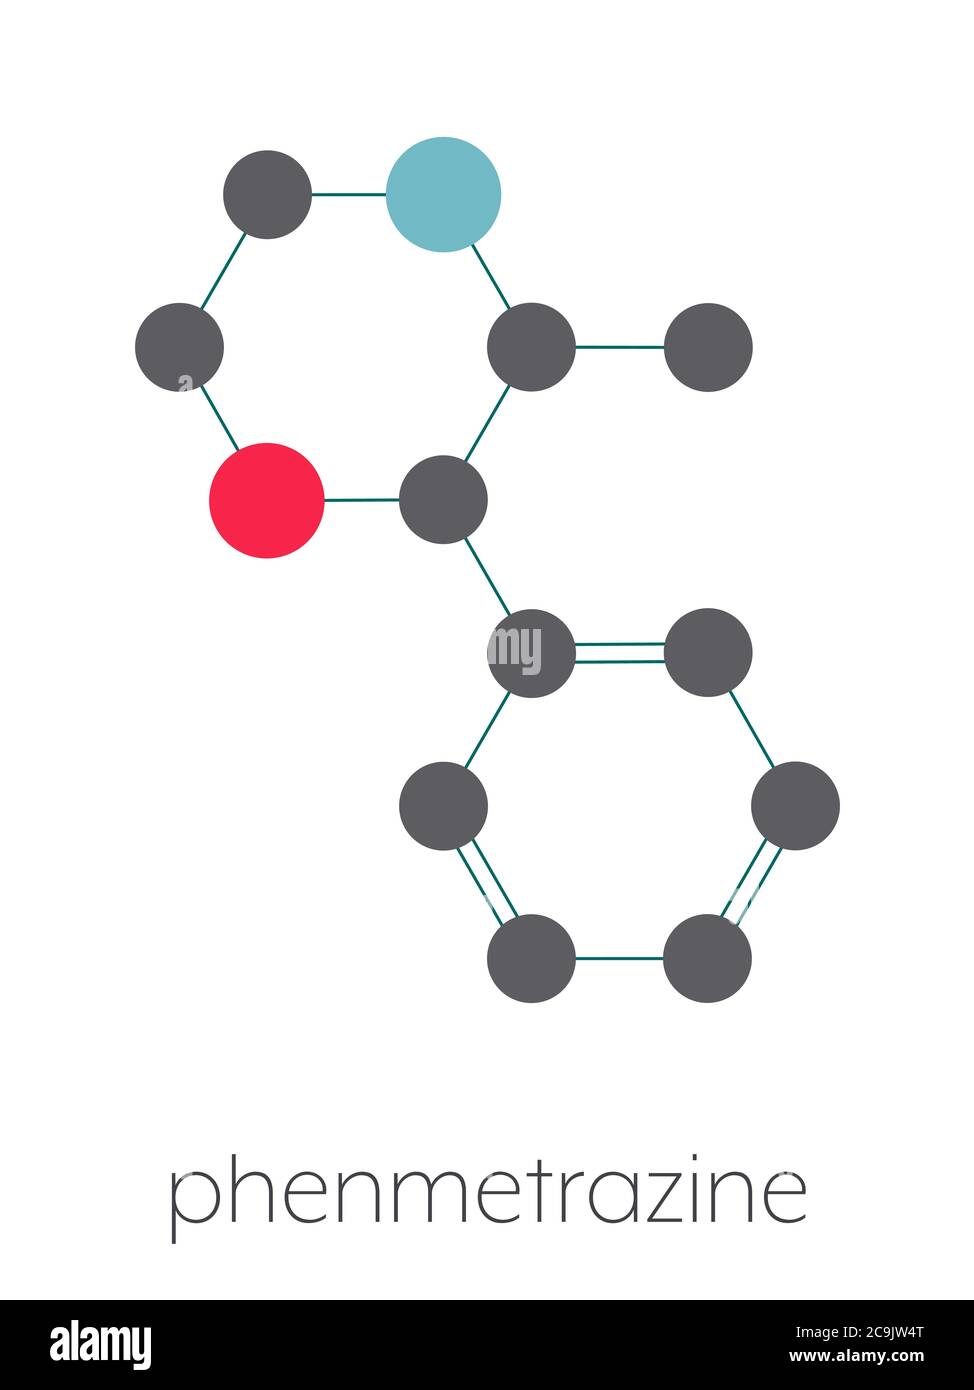 Phenmetrazine stimulant drug molecule (amphetamine class). Used as stimulant and appetite suppressant. Stylized skeletal formula (chemical structure). Stock Photo